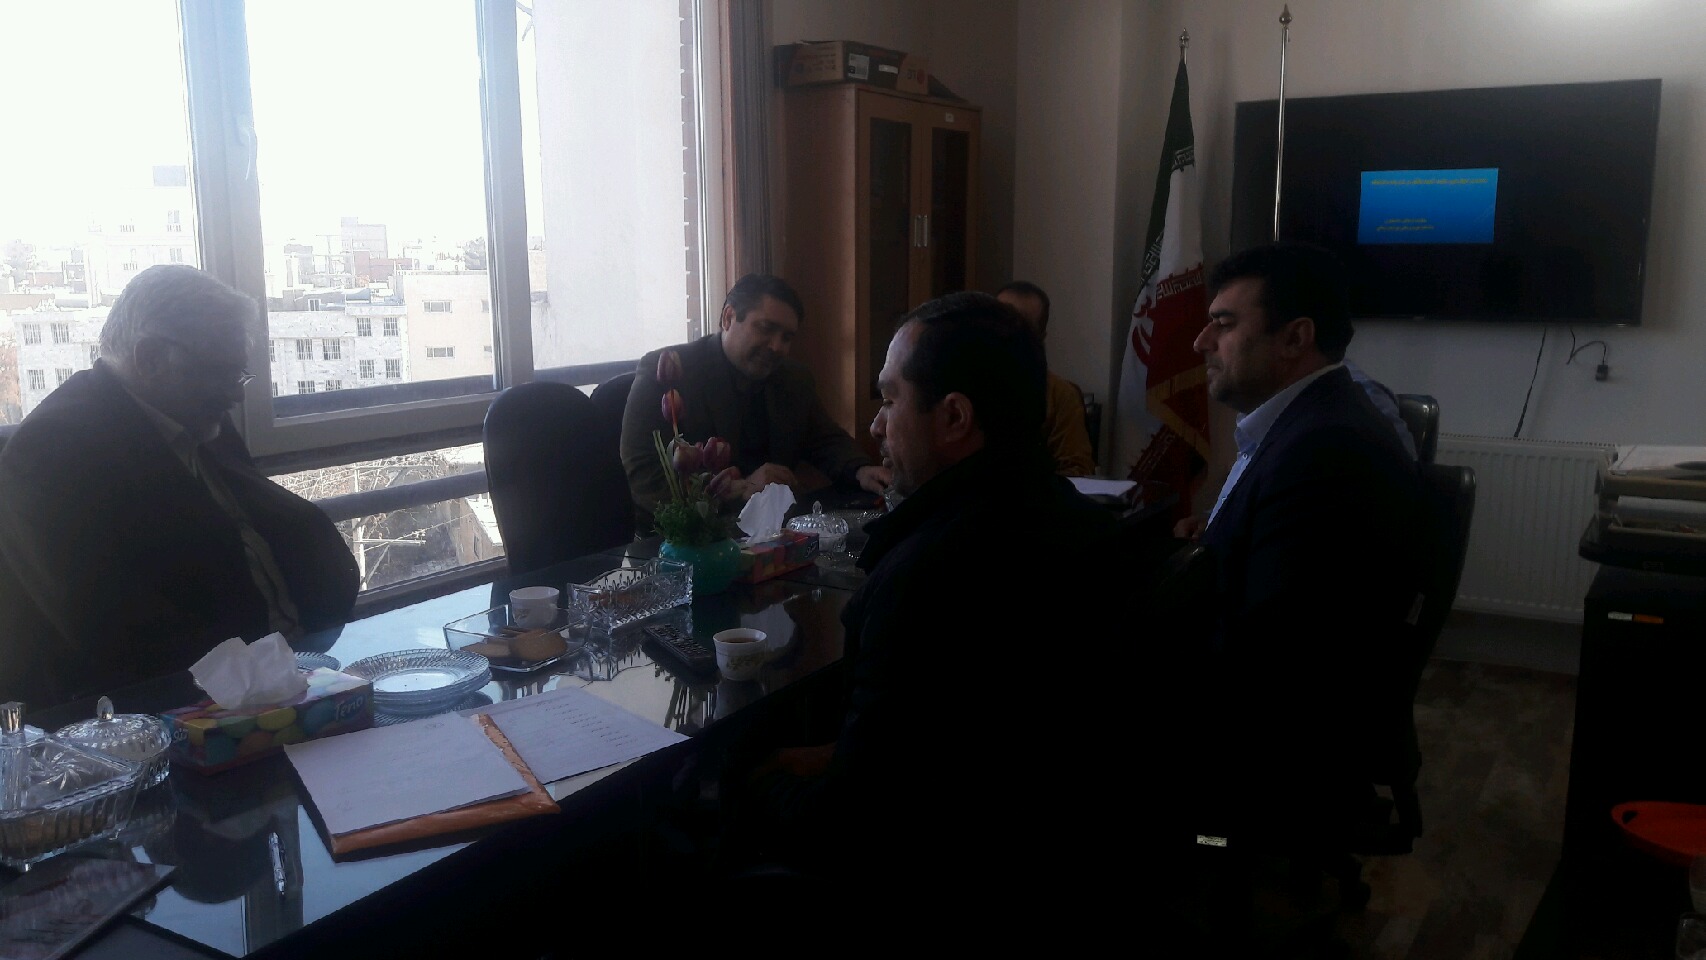 شصت و چهارمین جلسه کمیته ناظربر نشریات در دانشگاه علوم پزشکی خراسان شمالی برگزار شد.